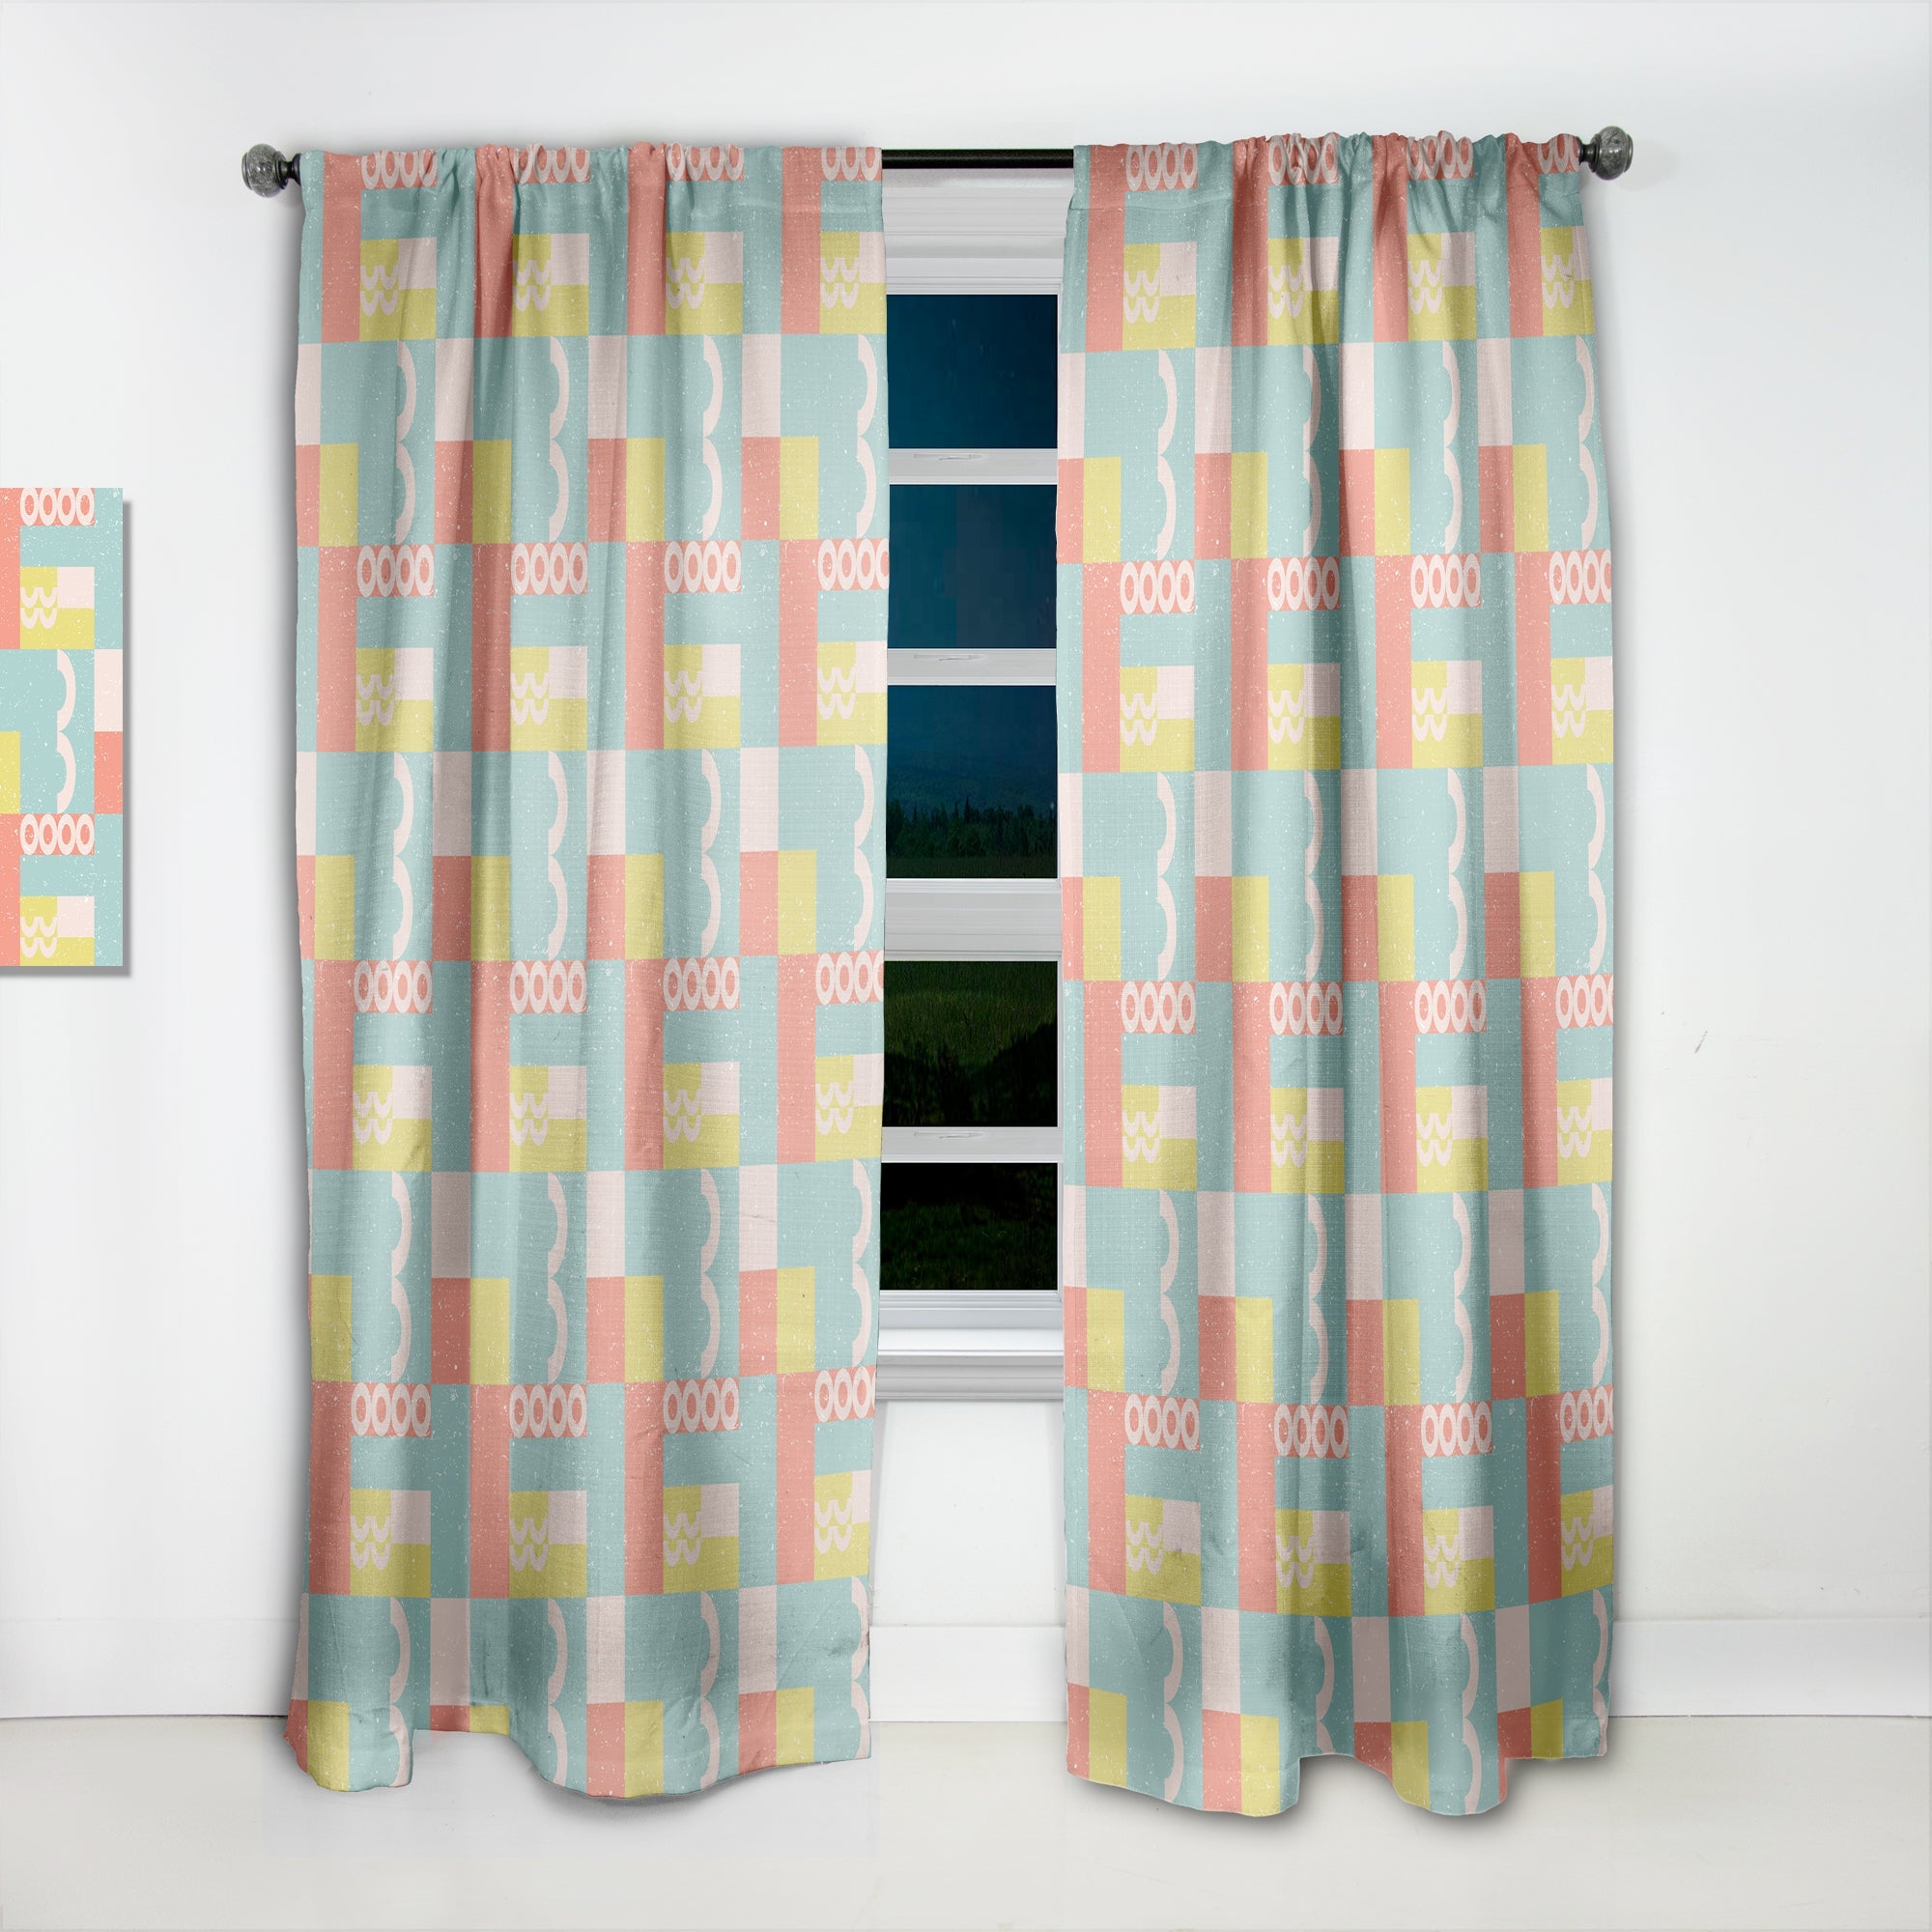 Retro Abstract Design III' Mid-Century Modern Curtain Panel